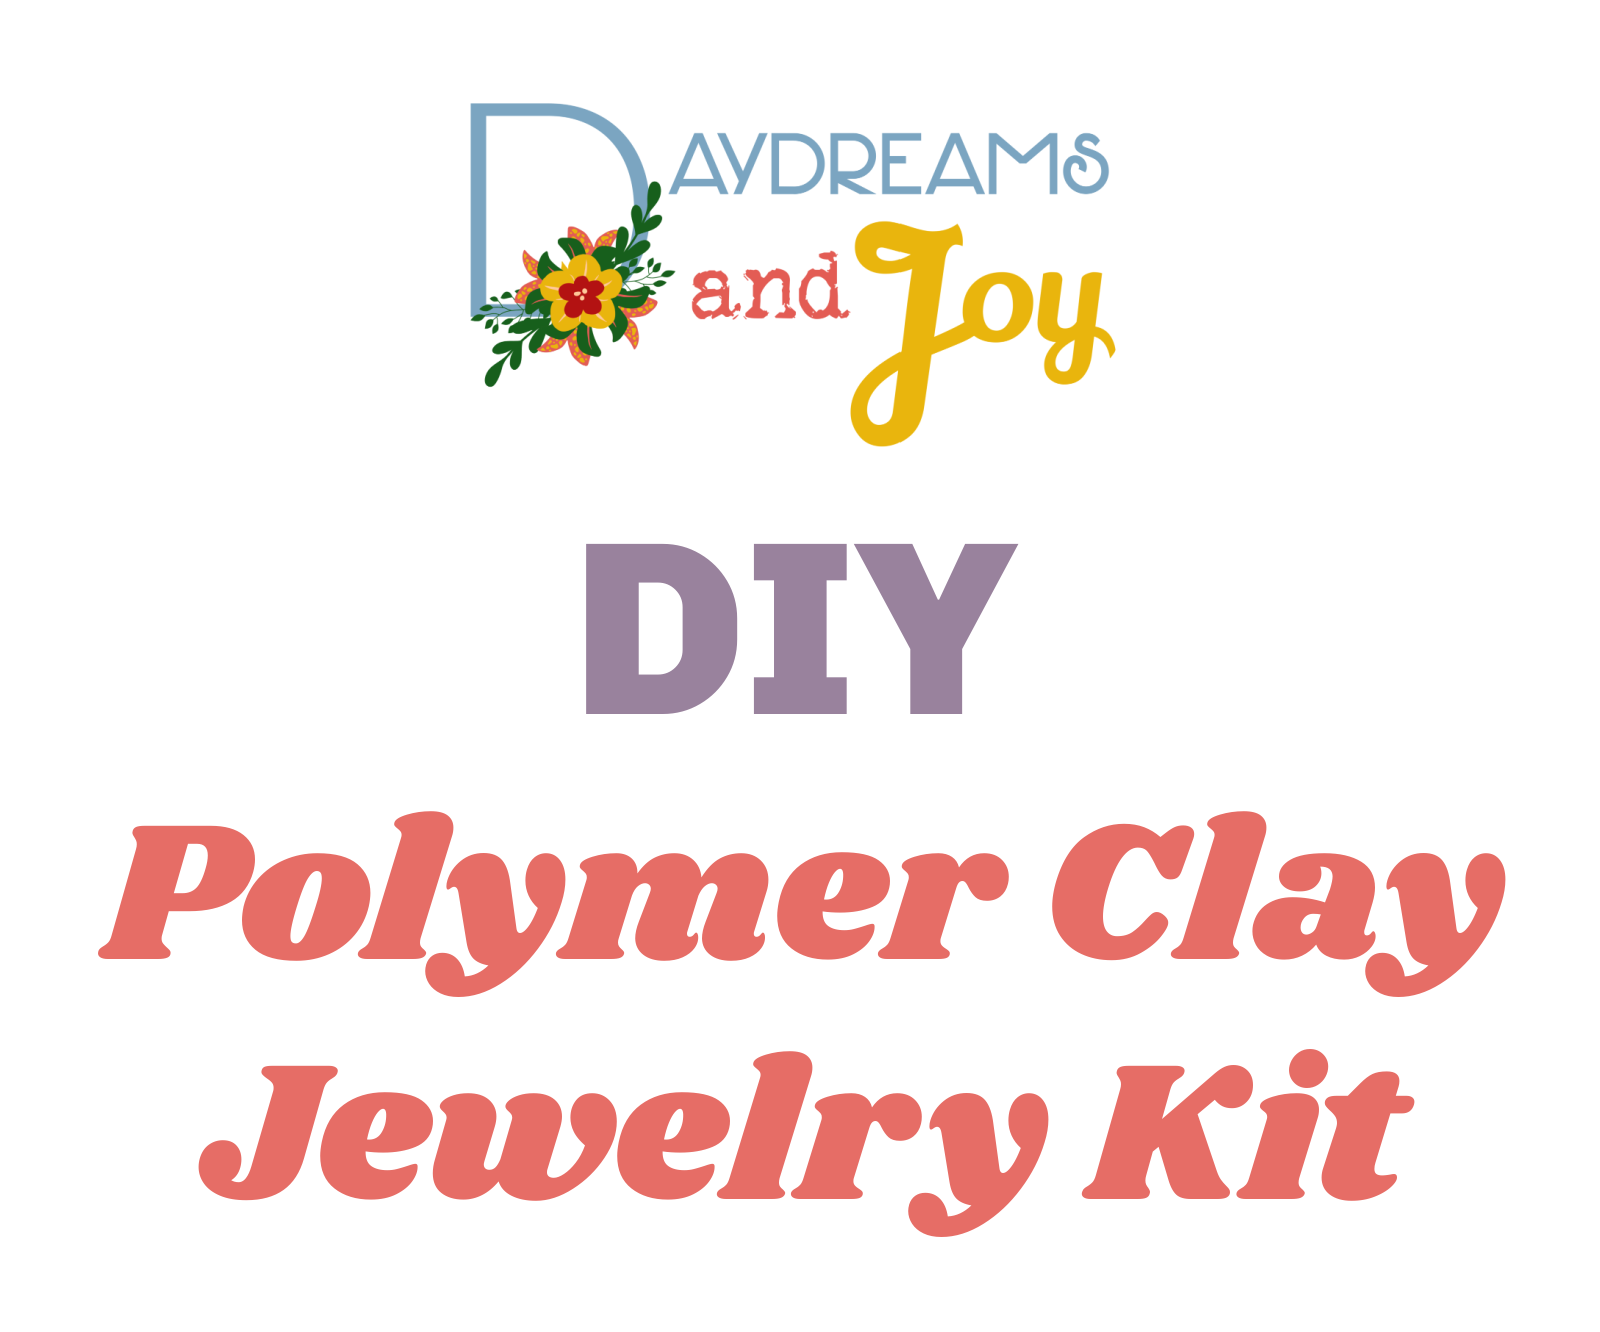 DIY Clay Jewelry Kit – Island Genius